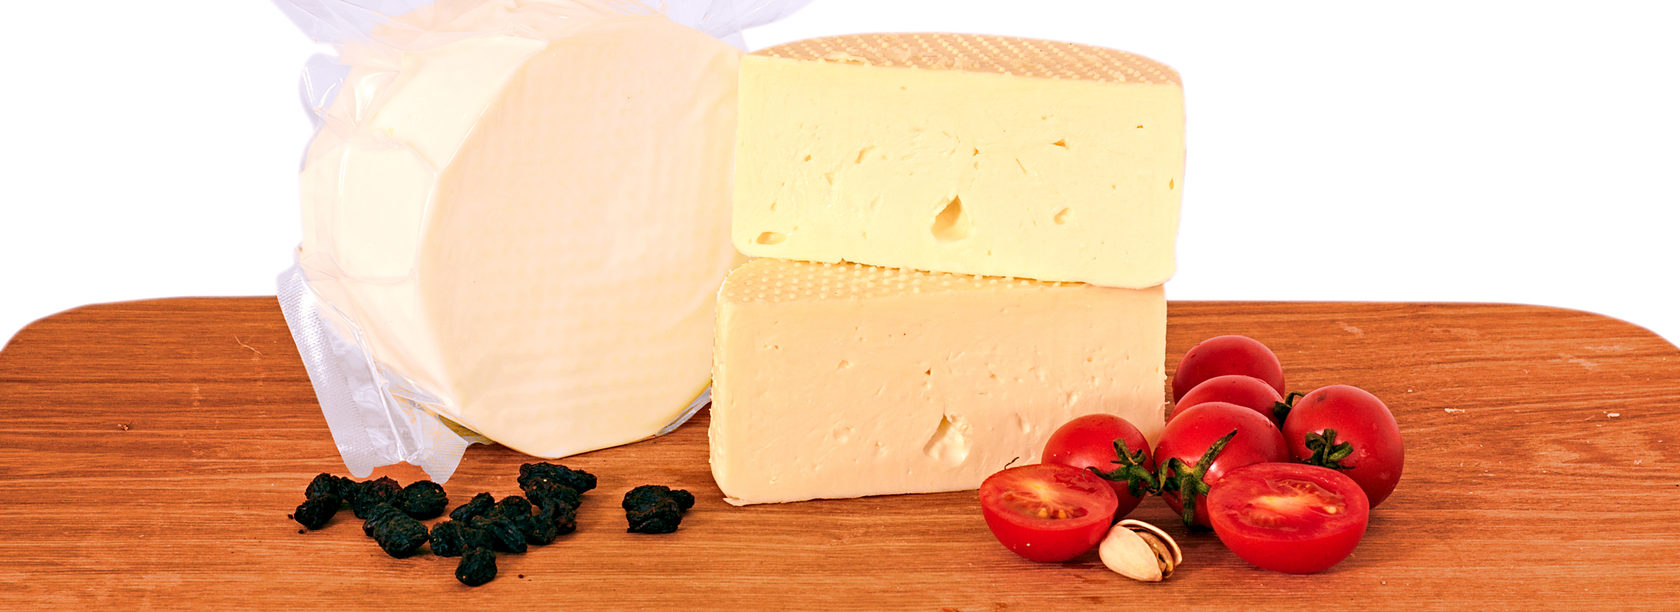 Купить сыры от производителя. Мягкий молодой сыр. Сыр моцарелла мягкий с белой плесенью. Сыр мягкий моцарелла сыроварня Волжанка ролл в рассоле 45%, 250 г. Сыр Качотта технология производства Италия описание.